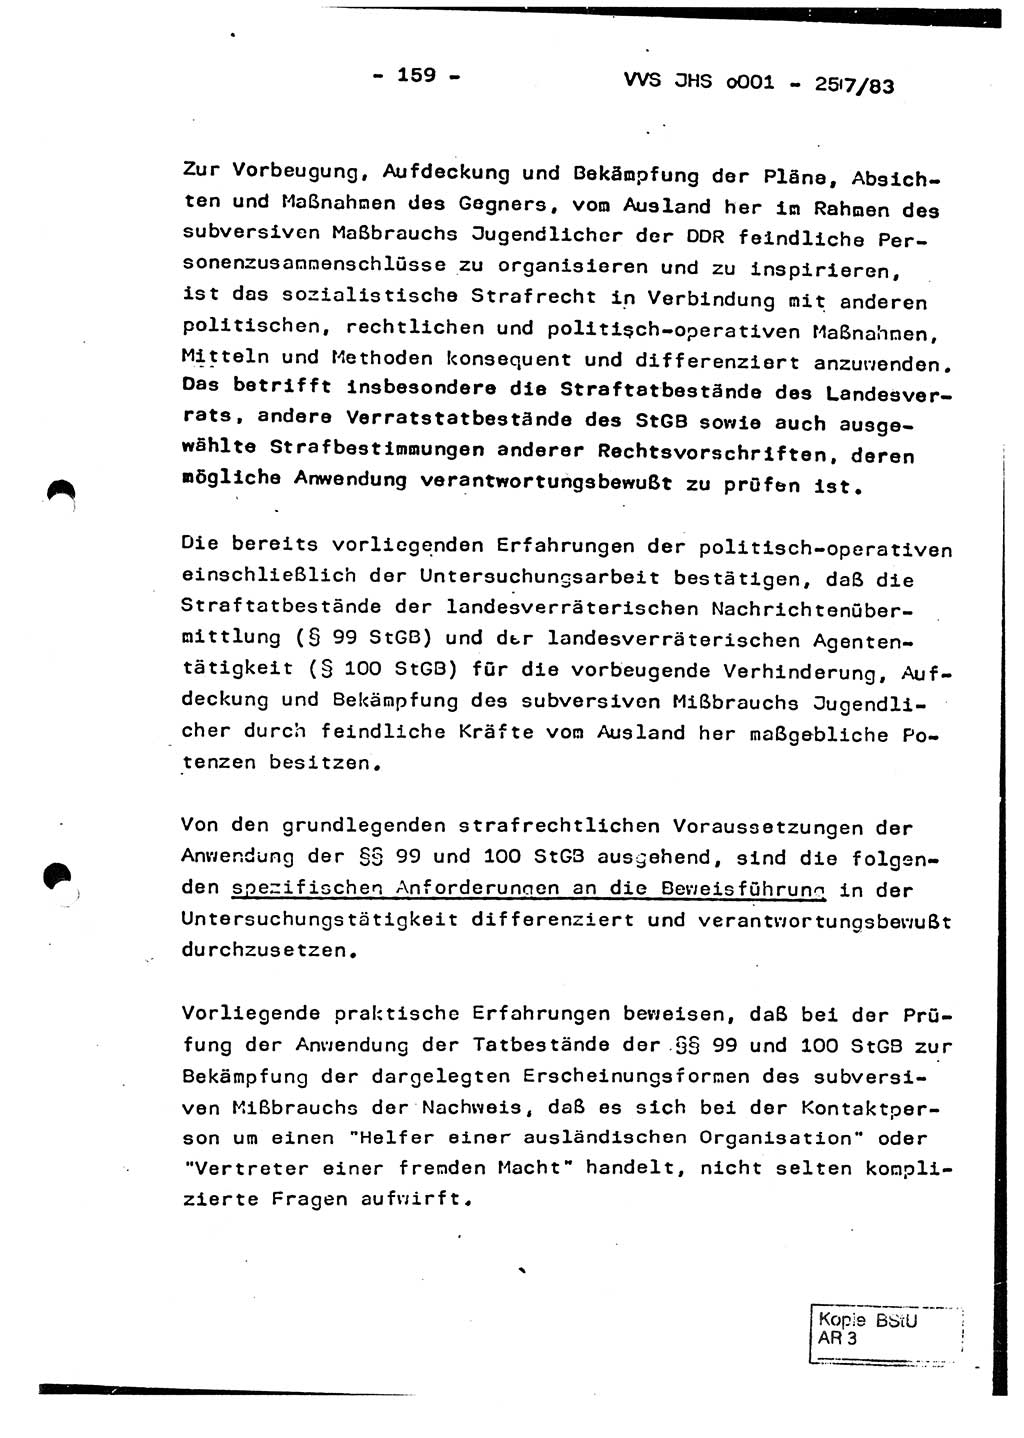 Dissertation, Oberst Helmut Lubas (BV Mdg.), Oberstleutnant Manfred Eschberger (HA IX), Oberleutnant Hans-Jürgen Ludwig (JHS), Ministerium für Staatssicherheit (MfS) [Deutsche Demokratische Republik (DDR)], Juristische Hochschule (JHS), Vertrauliche Verschlußsache (VVS) o001-257/83, Potsdam 1983, Seite 159 (Diss. MfS DDR JHS VVS o001-257/83 1983, S. 159)